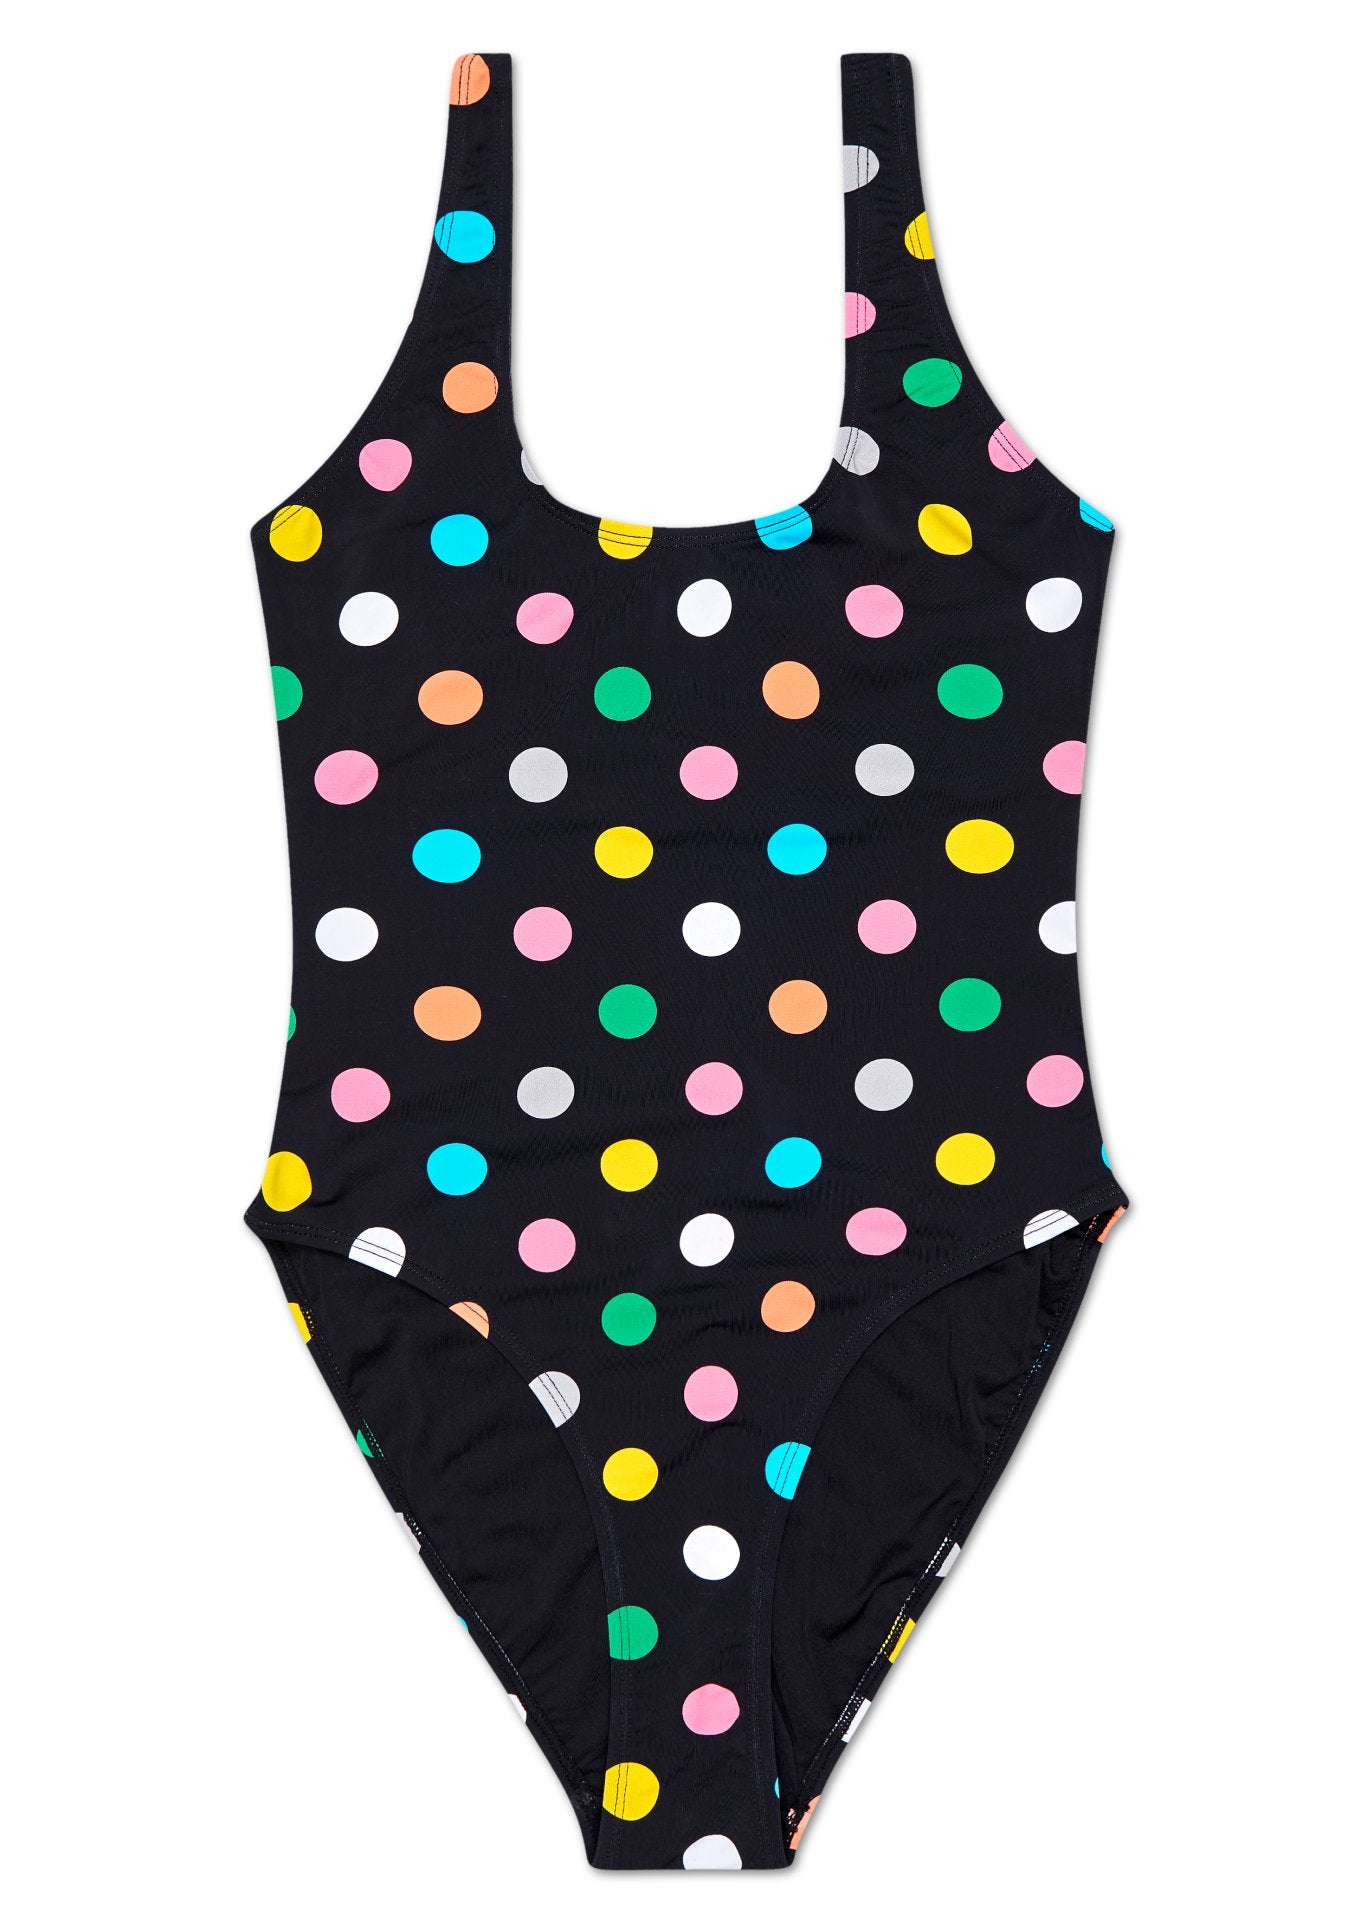 Černé dámské plavky Happy Socks s barevnými puntíky, vzor Big Dot